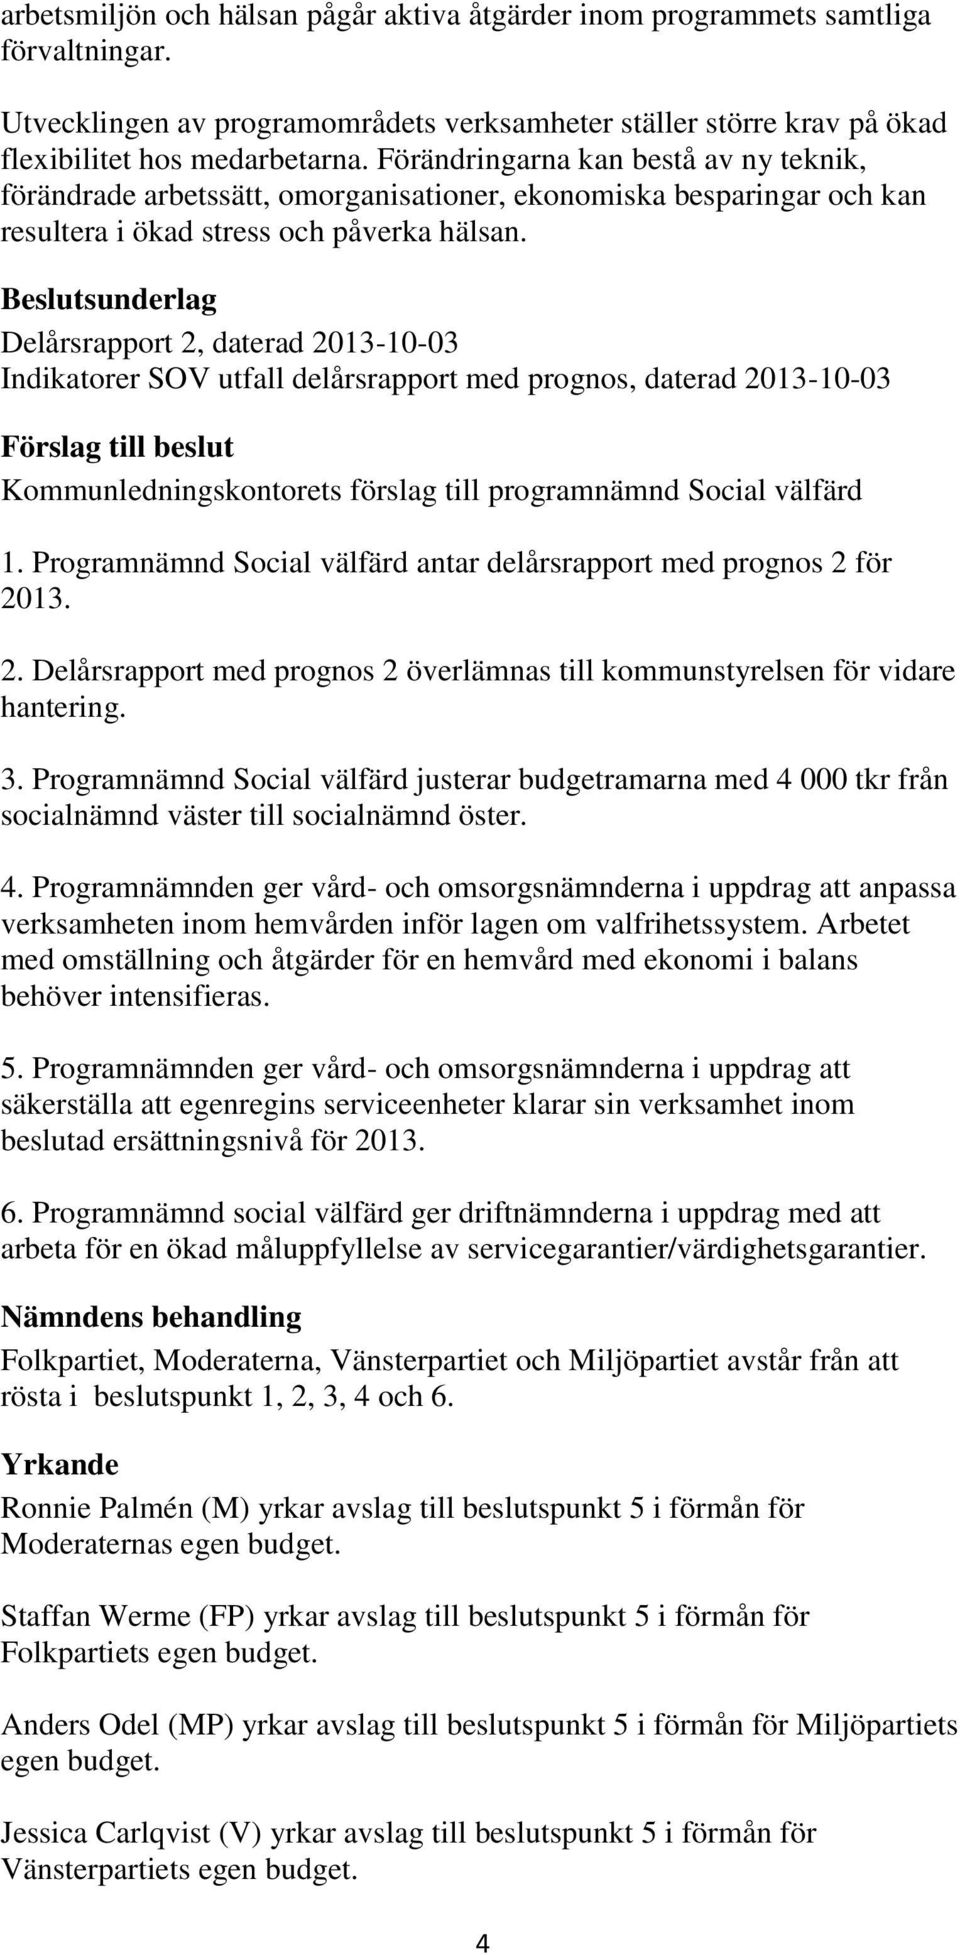 sunderlag Delårsrapport 2, daterad 2013-10-03 Indikatorer SOV utfall delårsrapport med prognos, daterad 2013-10-03 Kommunledningskontorets förslag till programnämnd Social välfärd 1.